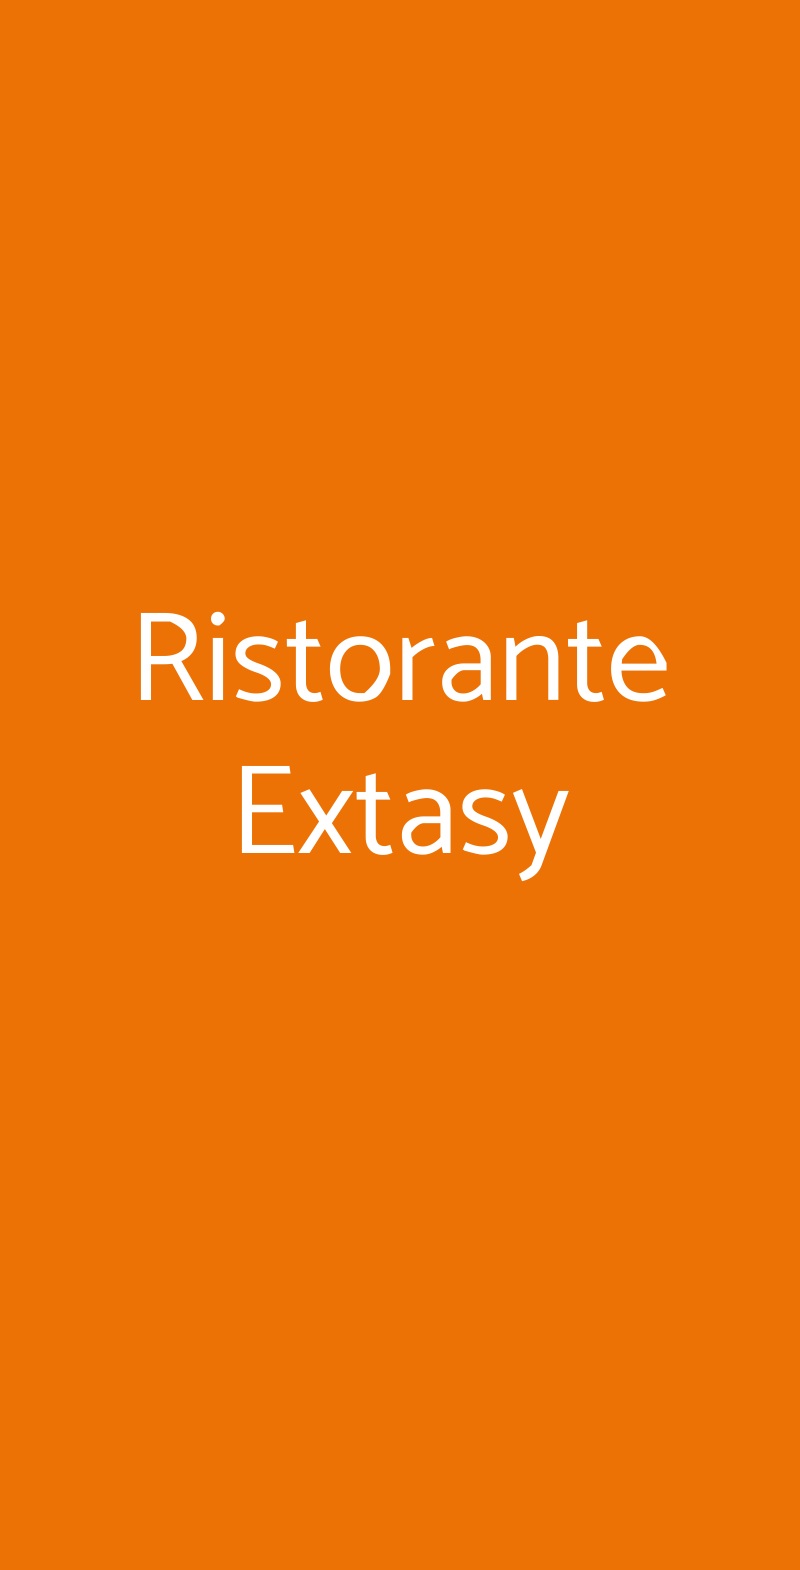 Ristorante Extasy Cusano Milanino menù 1 pagina